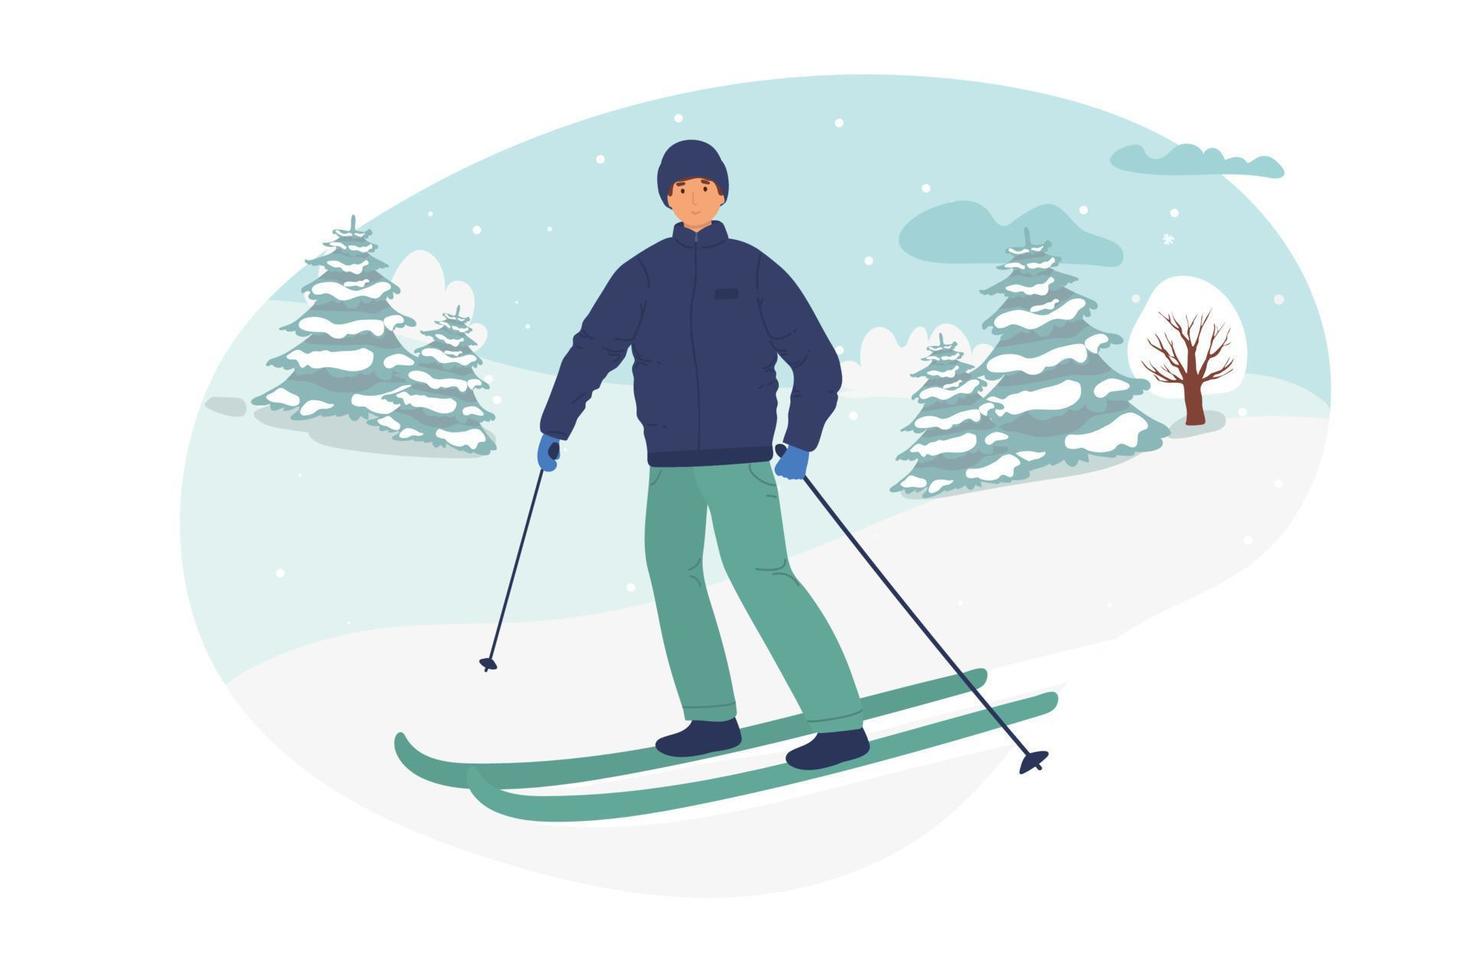 giovane che guida sugli sci mascherati, inverno. illustrazione vettoriale piatto in stile cartone animato. attività sportive invernali illustrazione vettoriale. paesaggio invernale